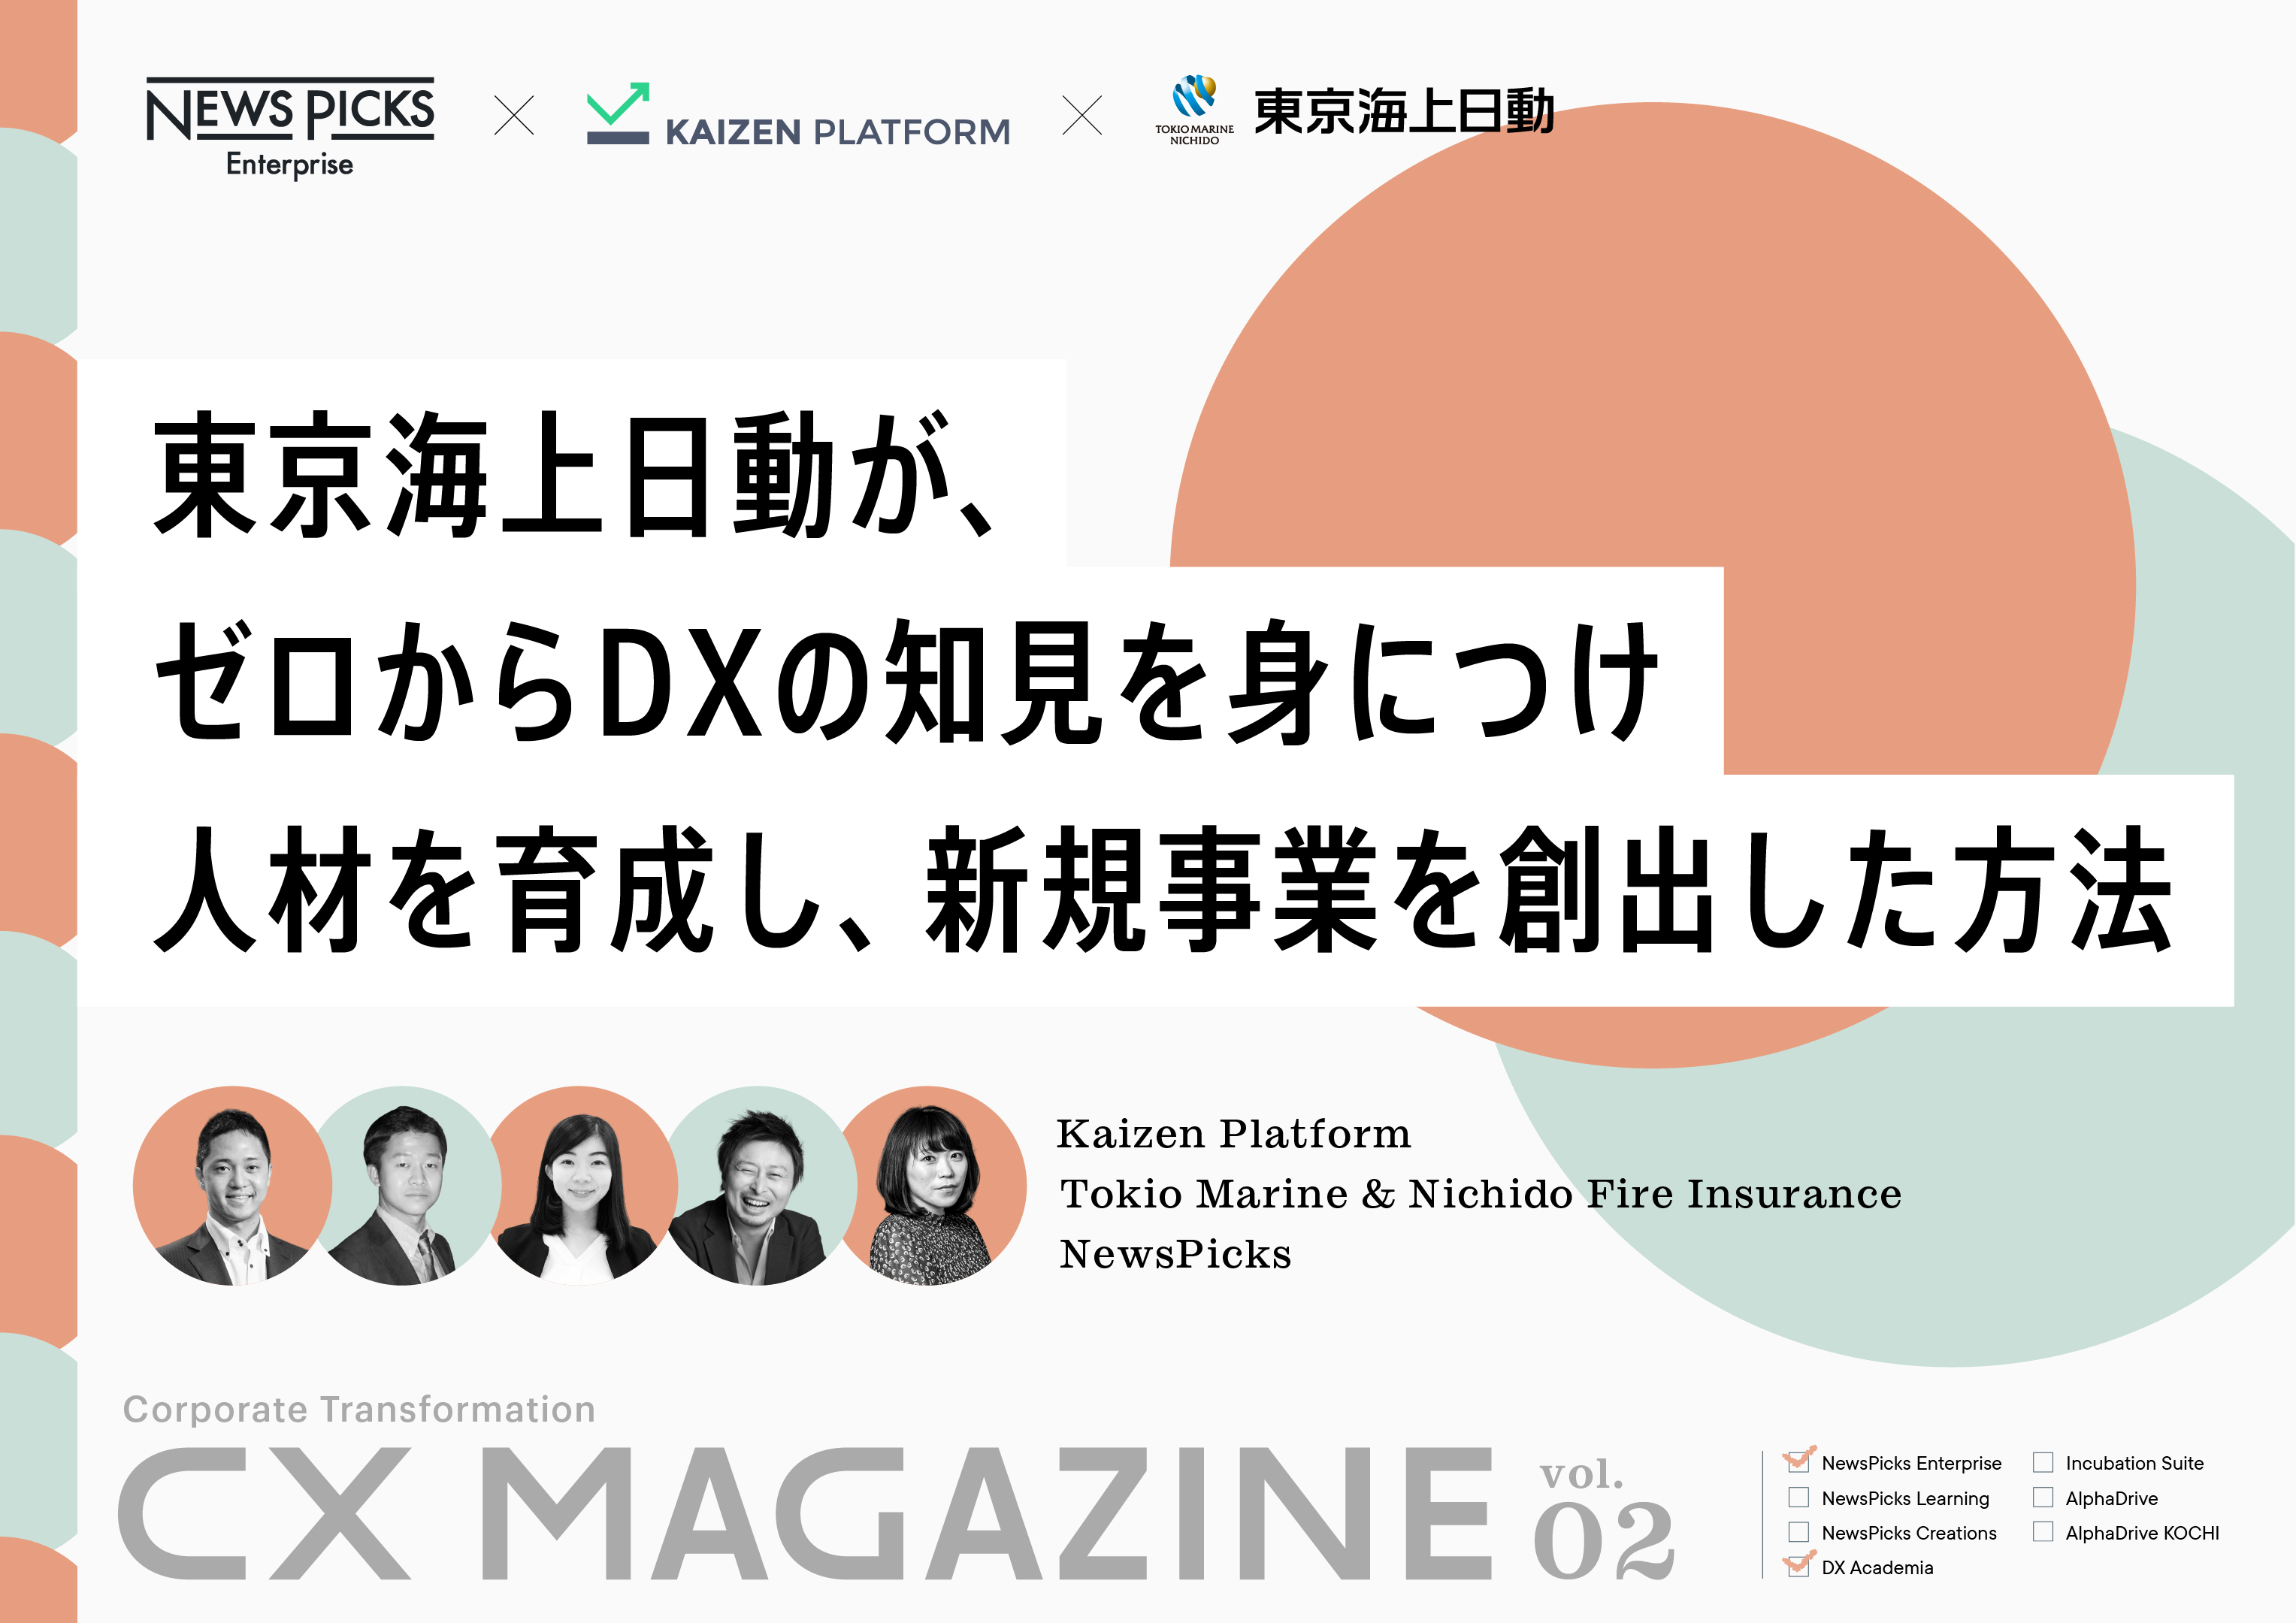 東京海上日動が、 ゼロからDXの知見を身につけ 人材を育成し、新規事業を創出した方法